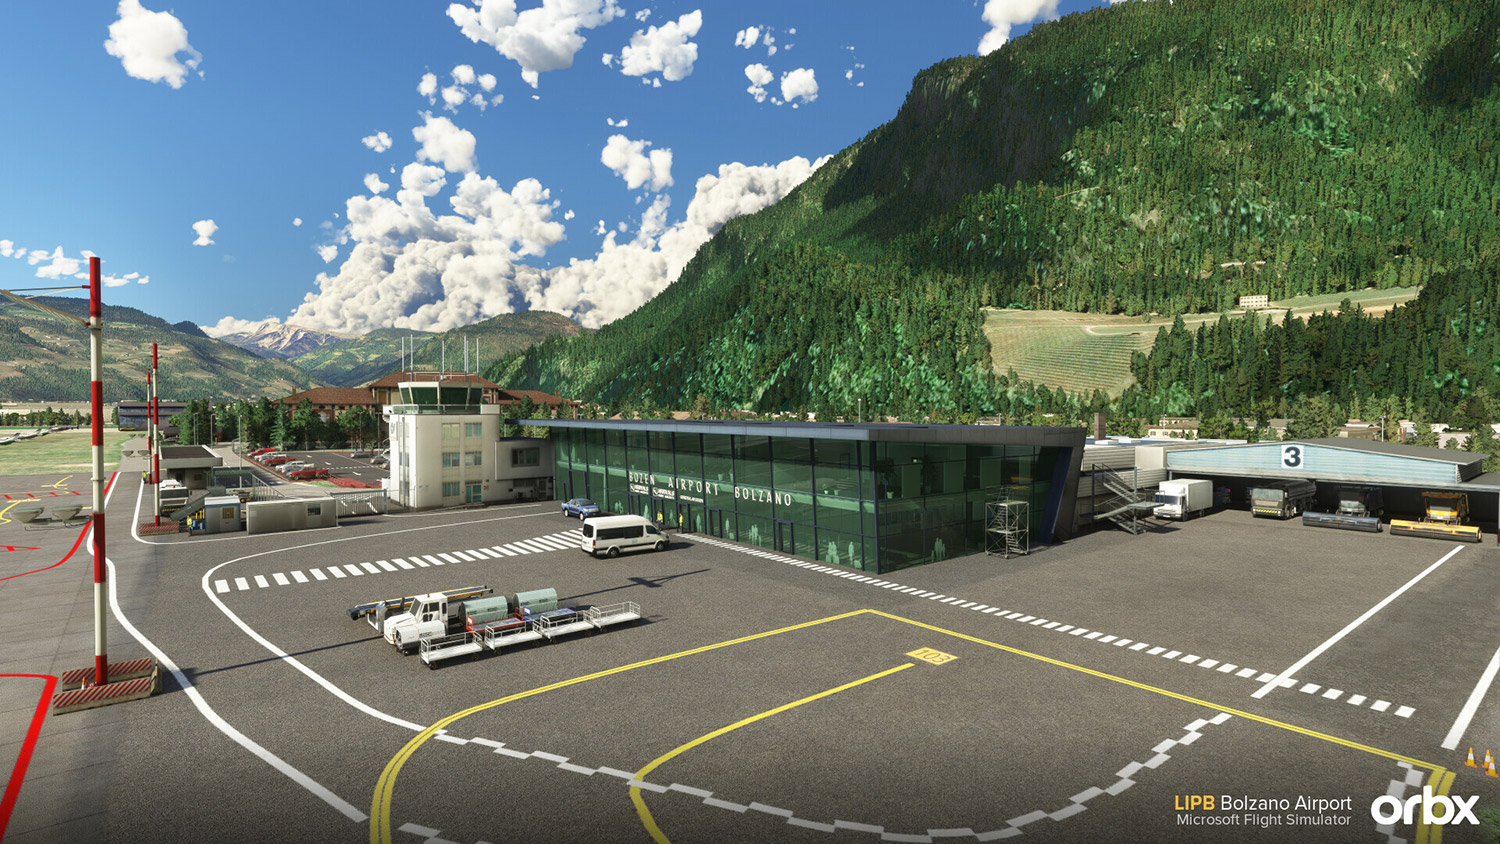 Orbx - LIPB - Bolzano Airport MSFS